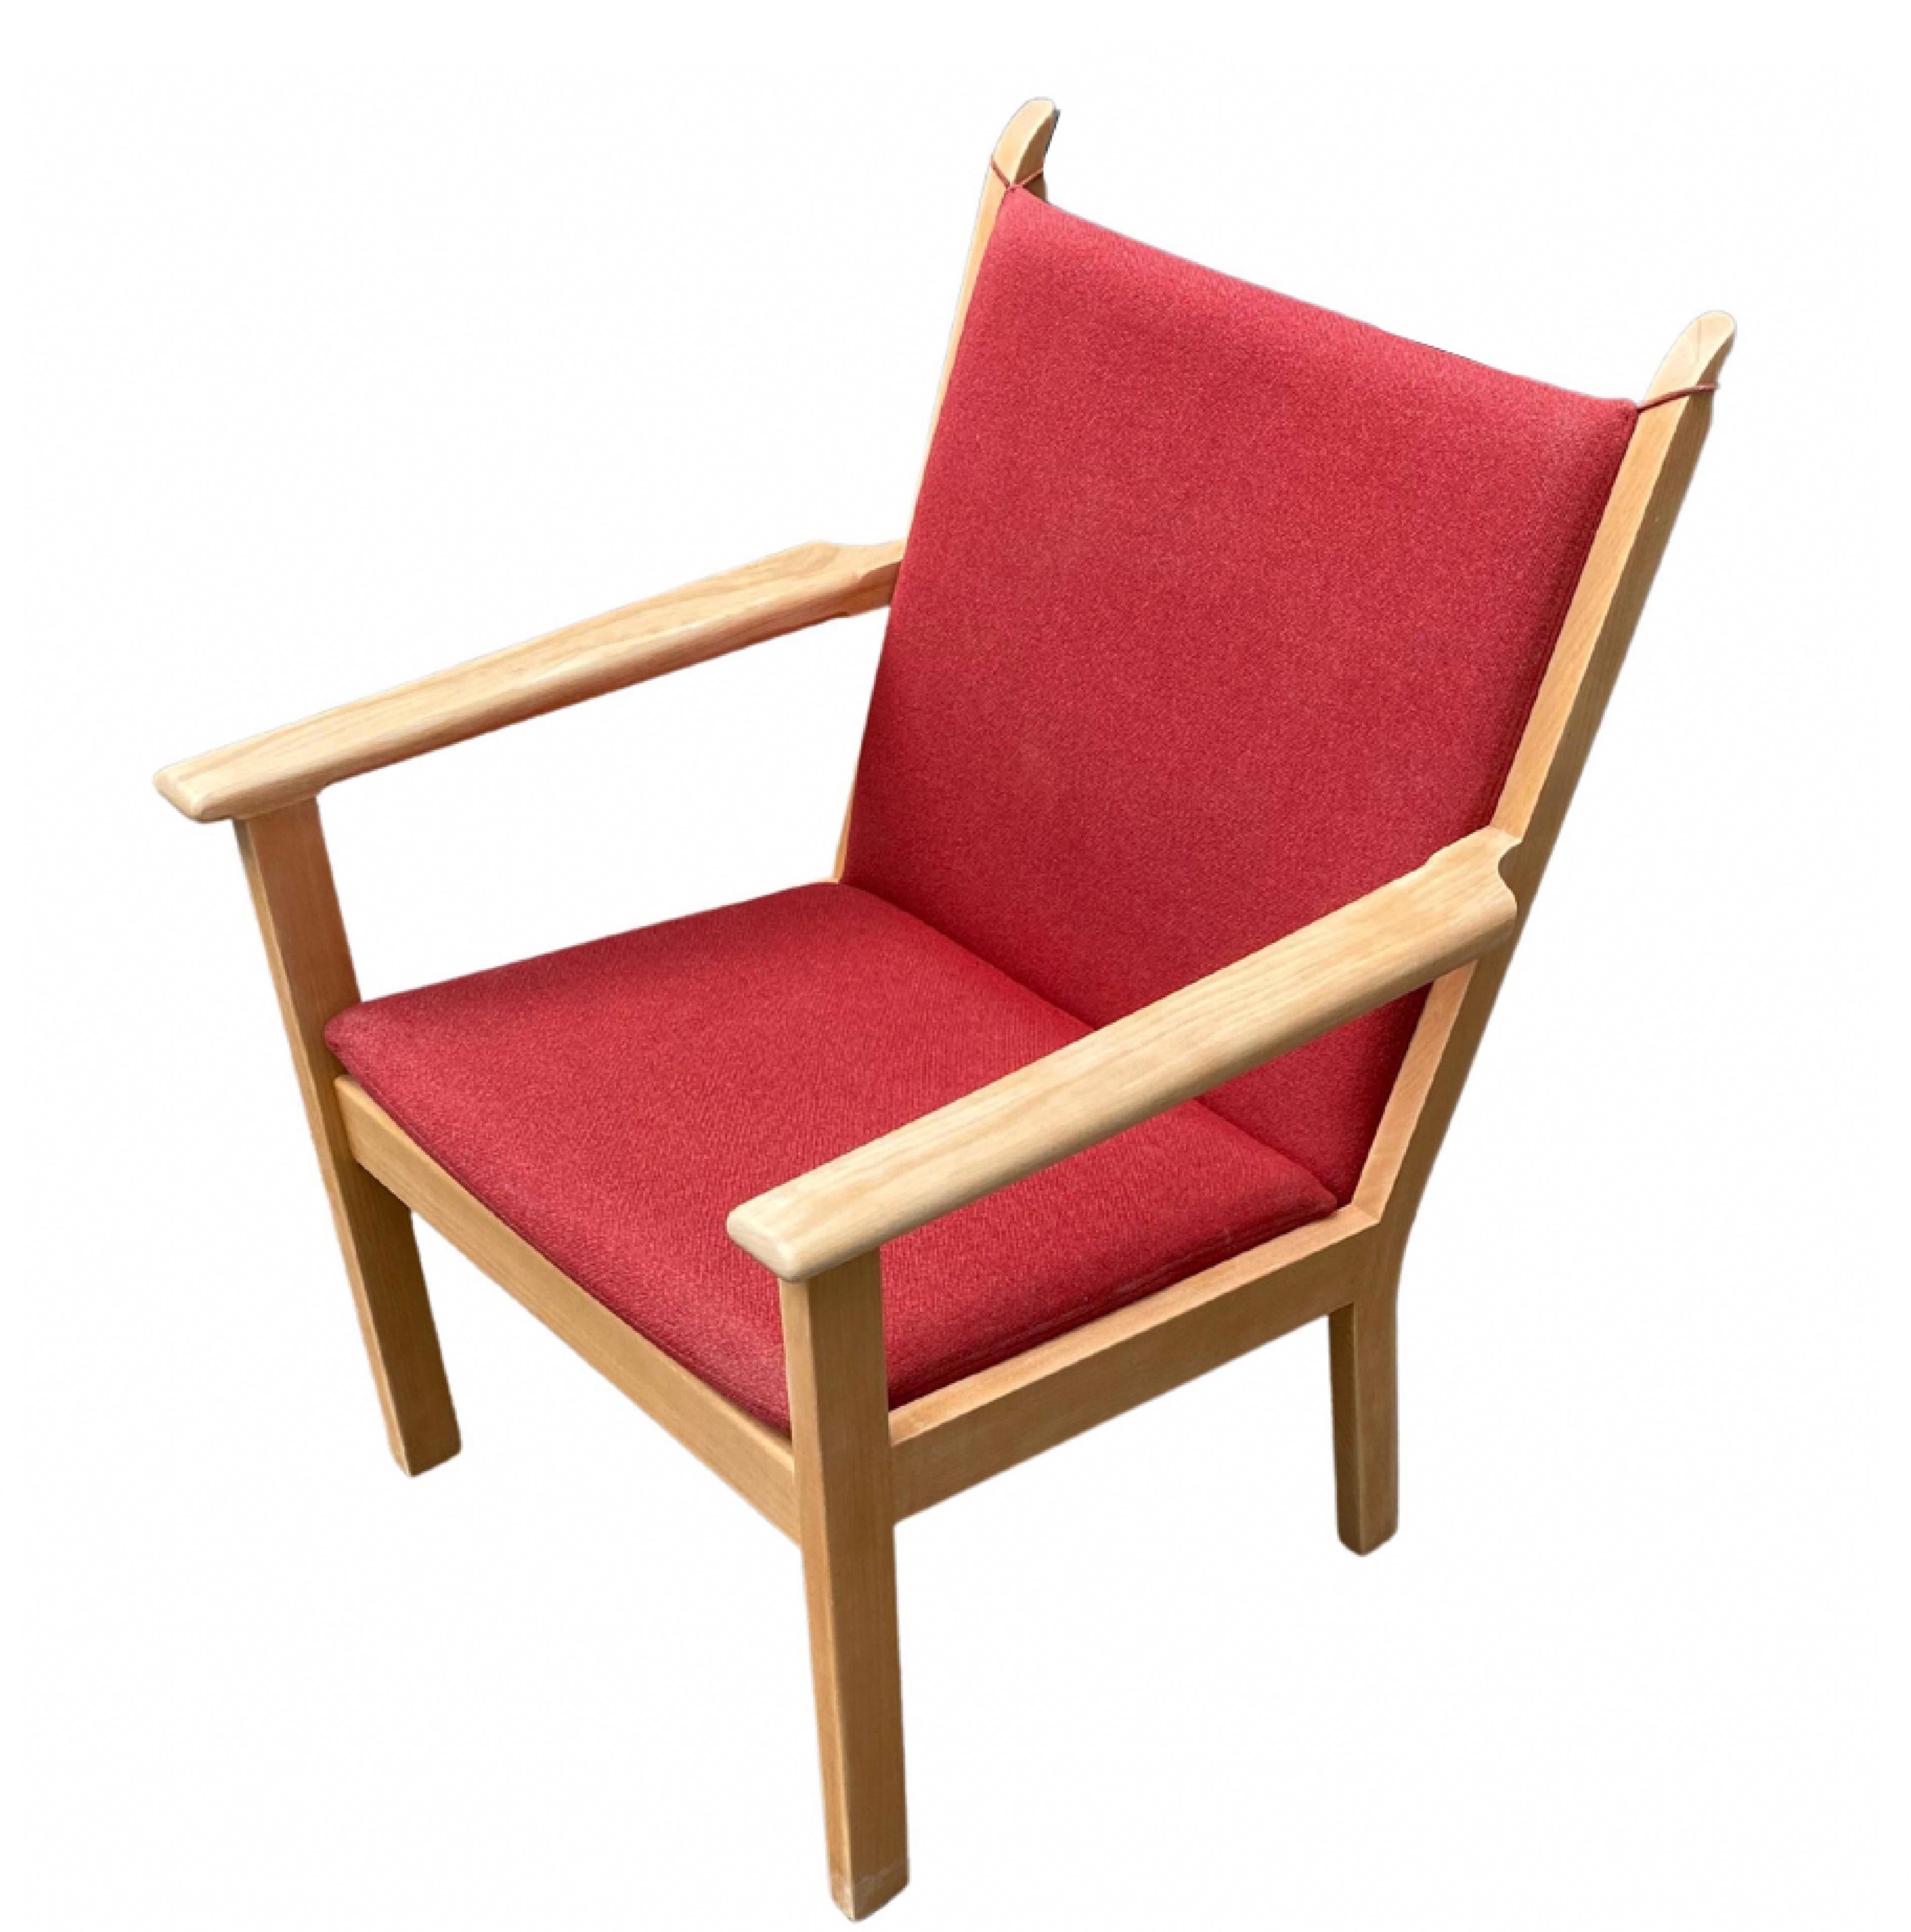 Chaise longue du probablement plus célèbre designer de meubles danois Hans J. Wegner. 

Modèle 